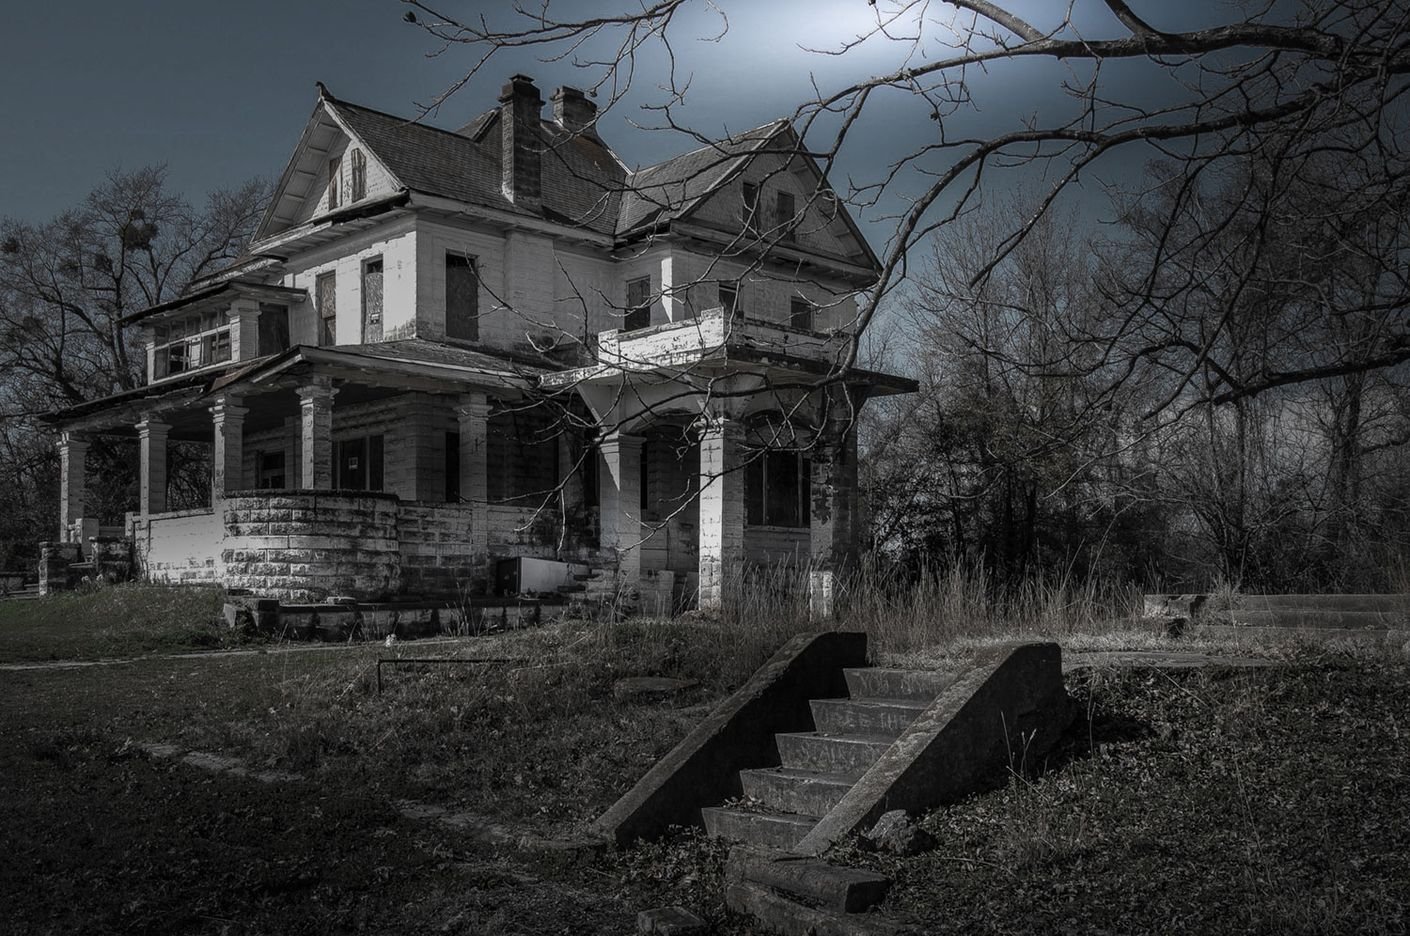 Ужасный сад. Проклятый особняк штат Индиана. Дом с призраками в вомельсдорфе, Пенсильвания. Хаунтед Хаус призрак. Деревянный особняк с привидениями в США.